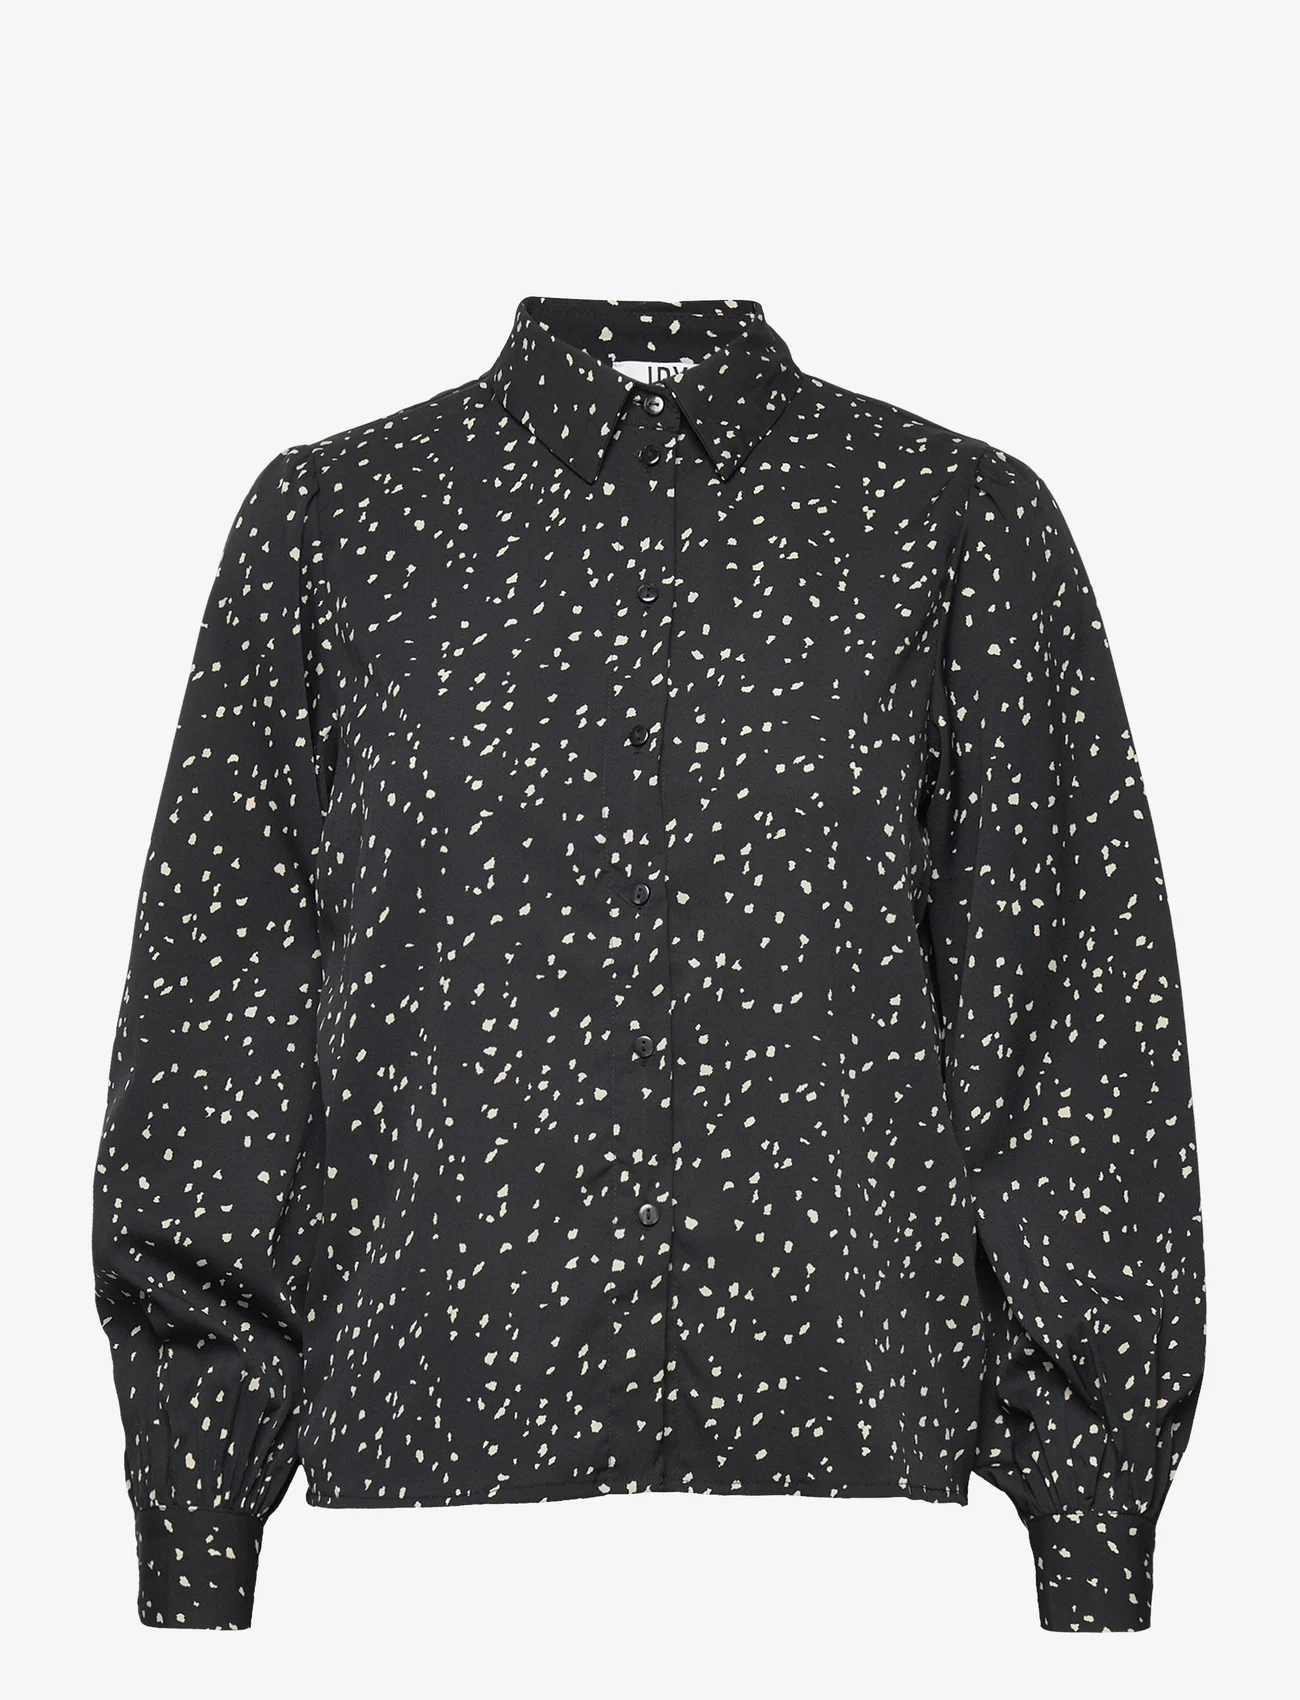 Jacqueline de Yong - JDYSINDEL L/S SHIRT WVN LO - langærmede skjorter - black - 0